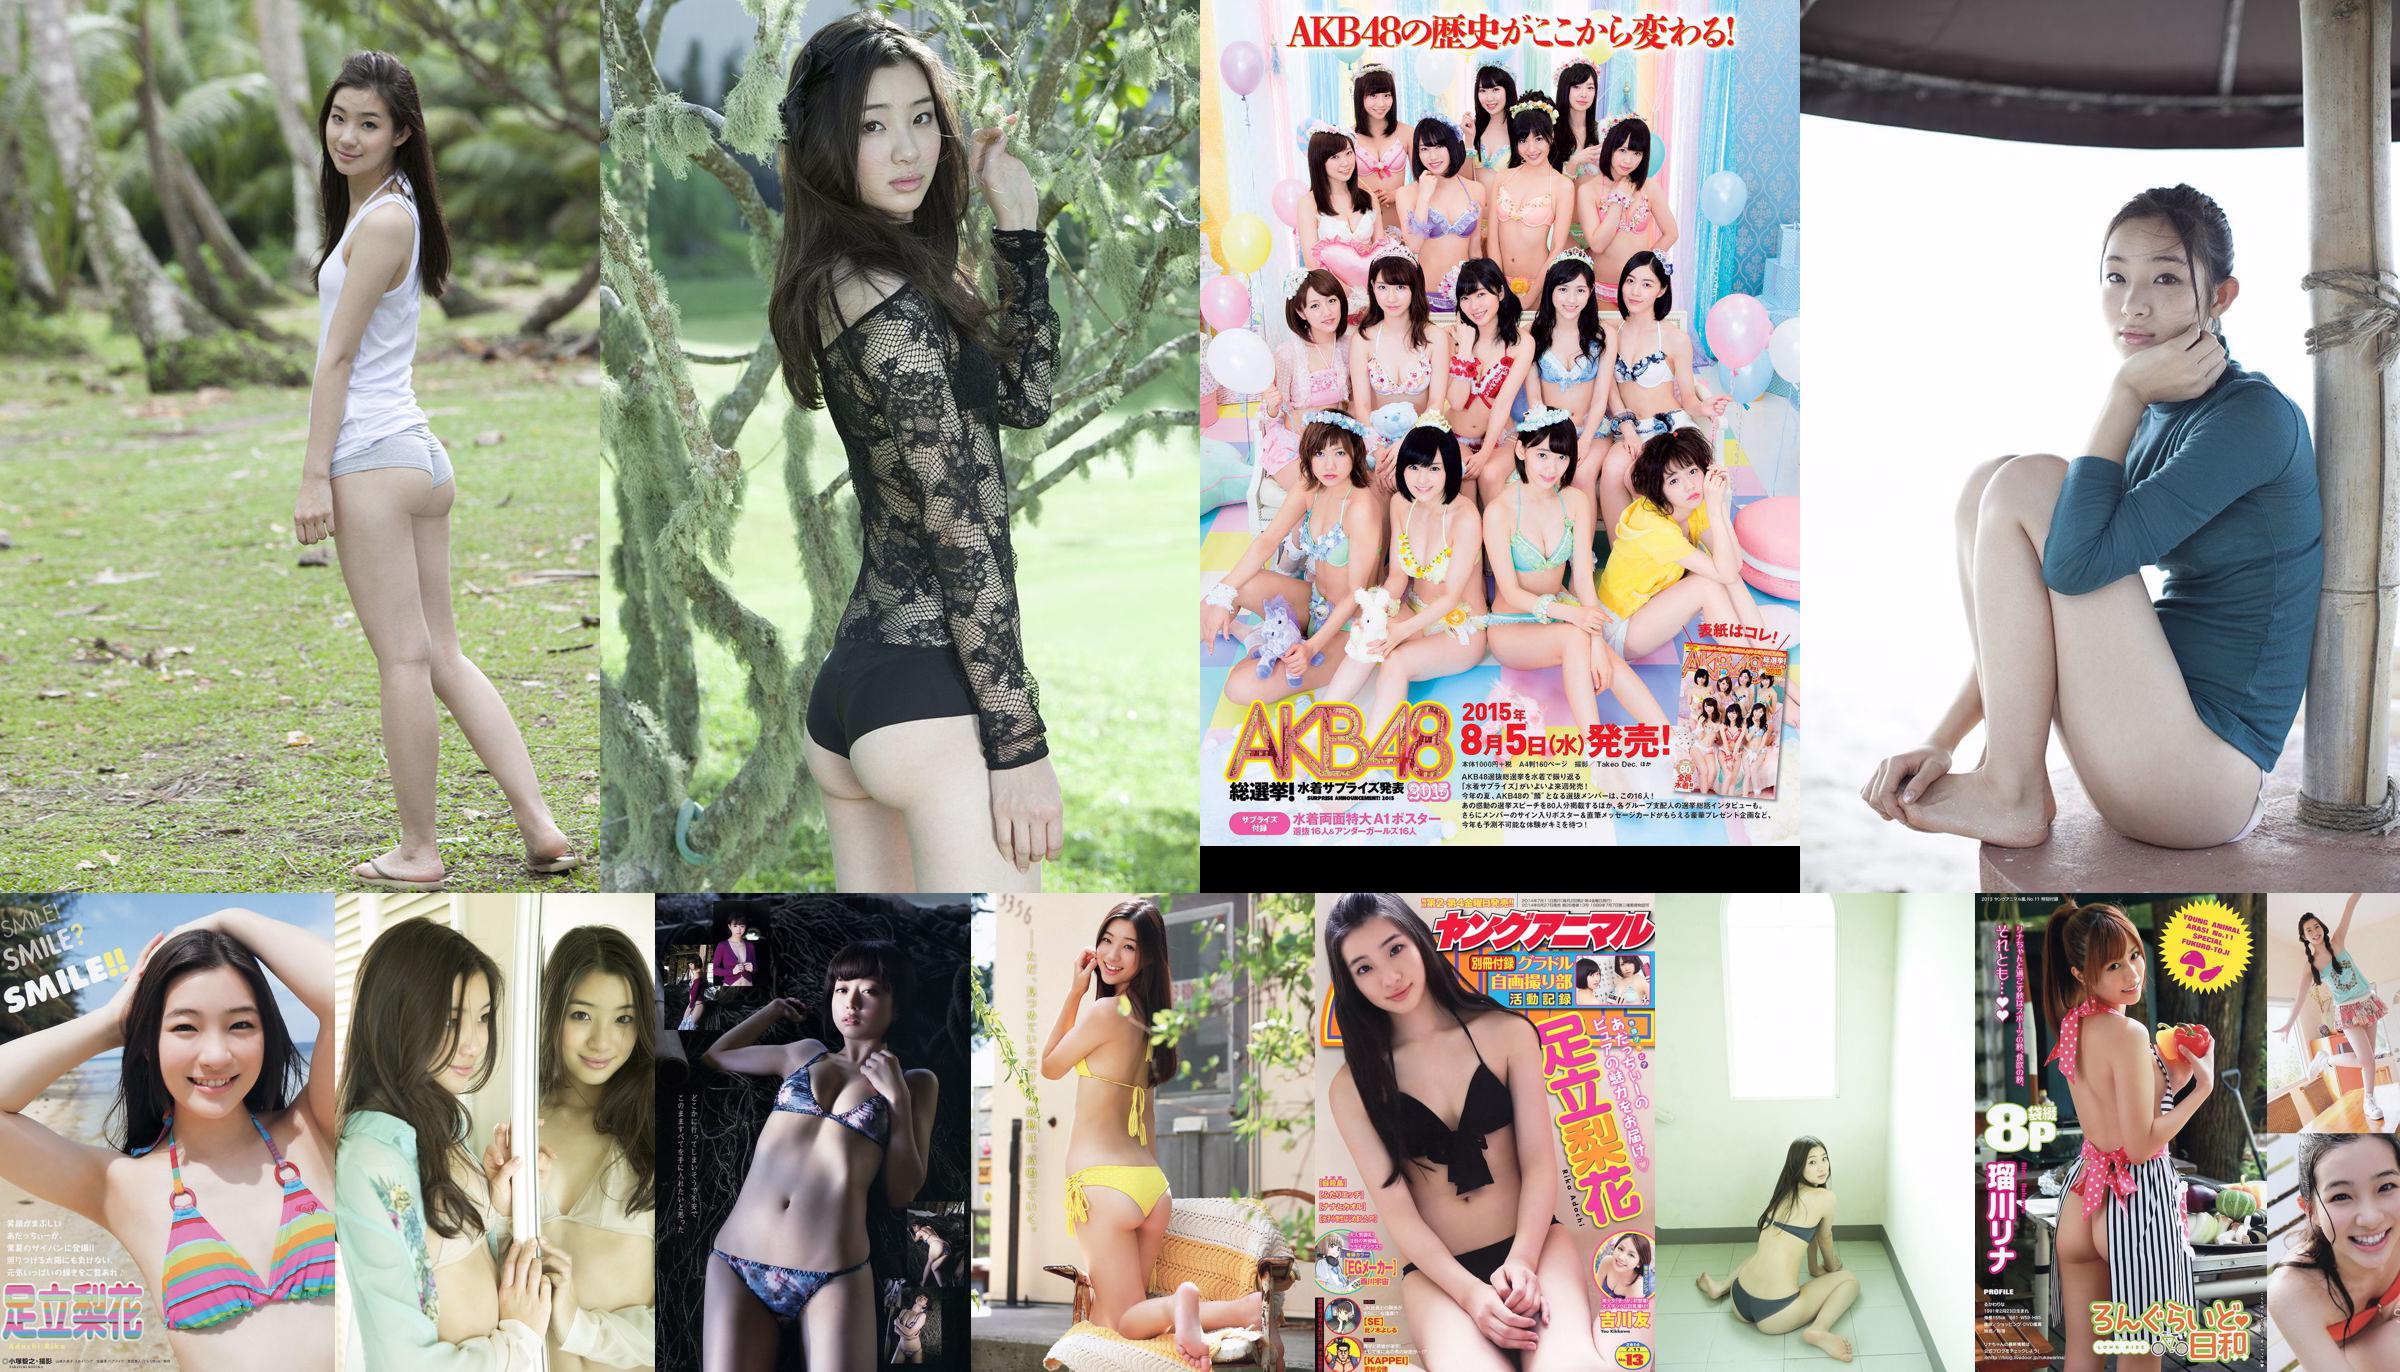 Adachi Rika, Kiya Takeshi, 瑠 川 リ ナ [Young Animal Arashi Special Issue] Tạp chí ảnh số 11 năm 2013 No.4206b5 Trang 1